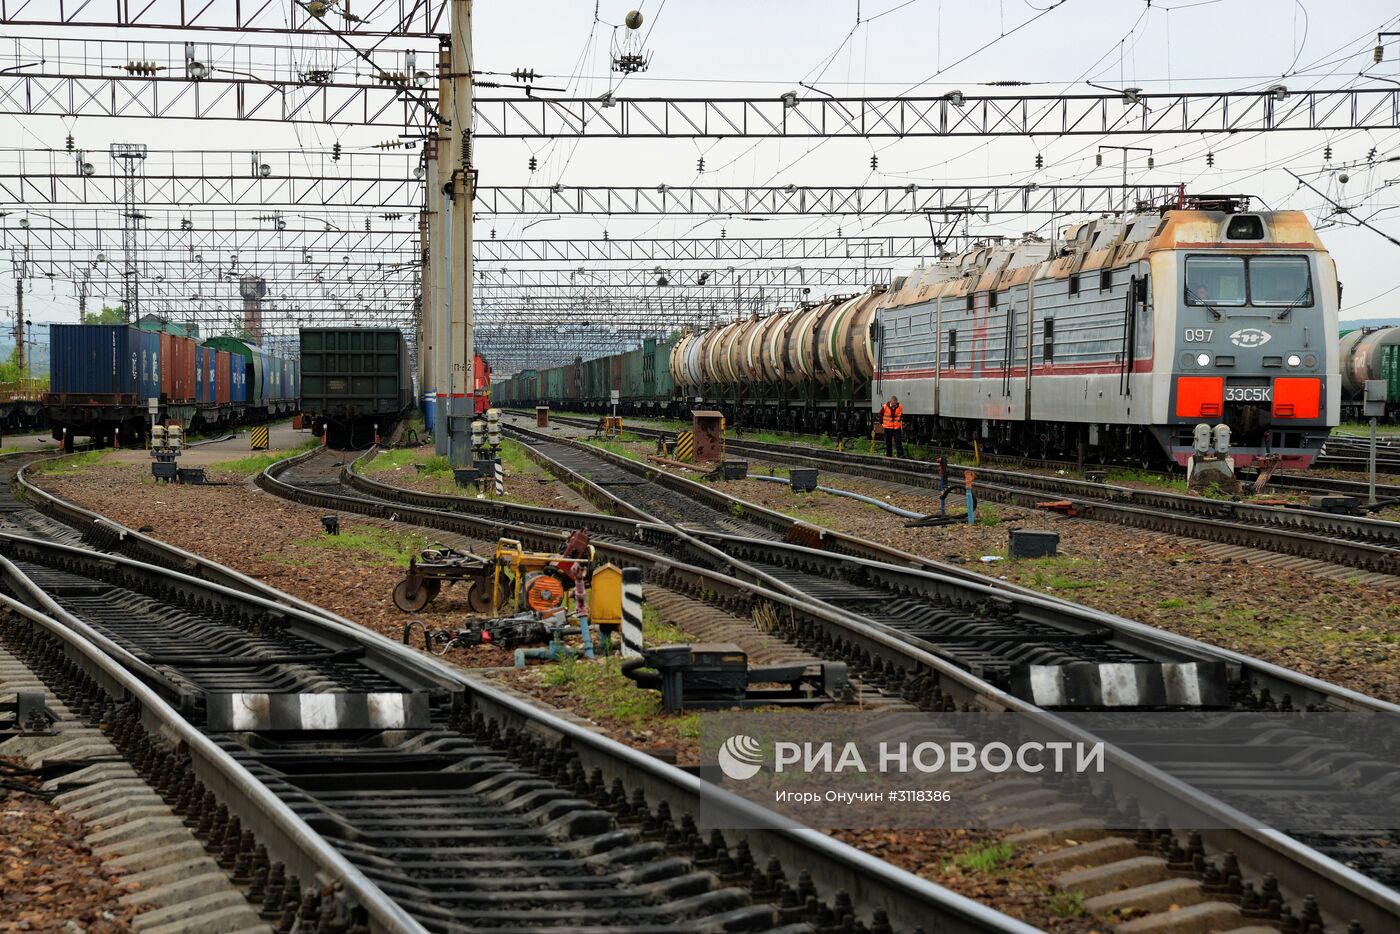 Сортировочная станция Дальневосточной железной дороги в Хабаровске